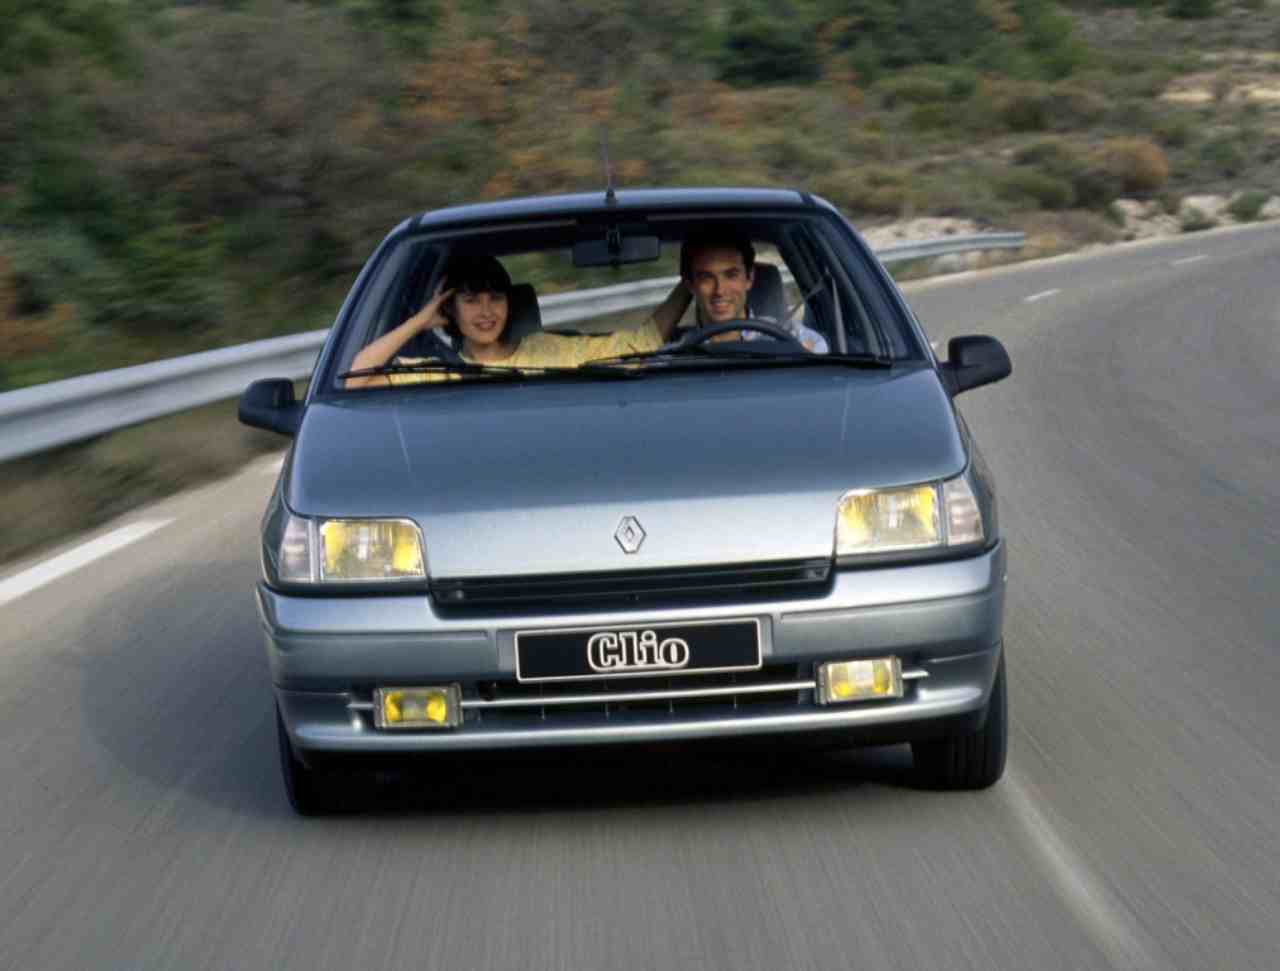 Renault Clio, 30 anni di storia: versioni e modelli di una city car iconica